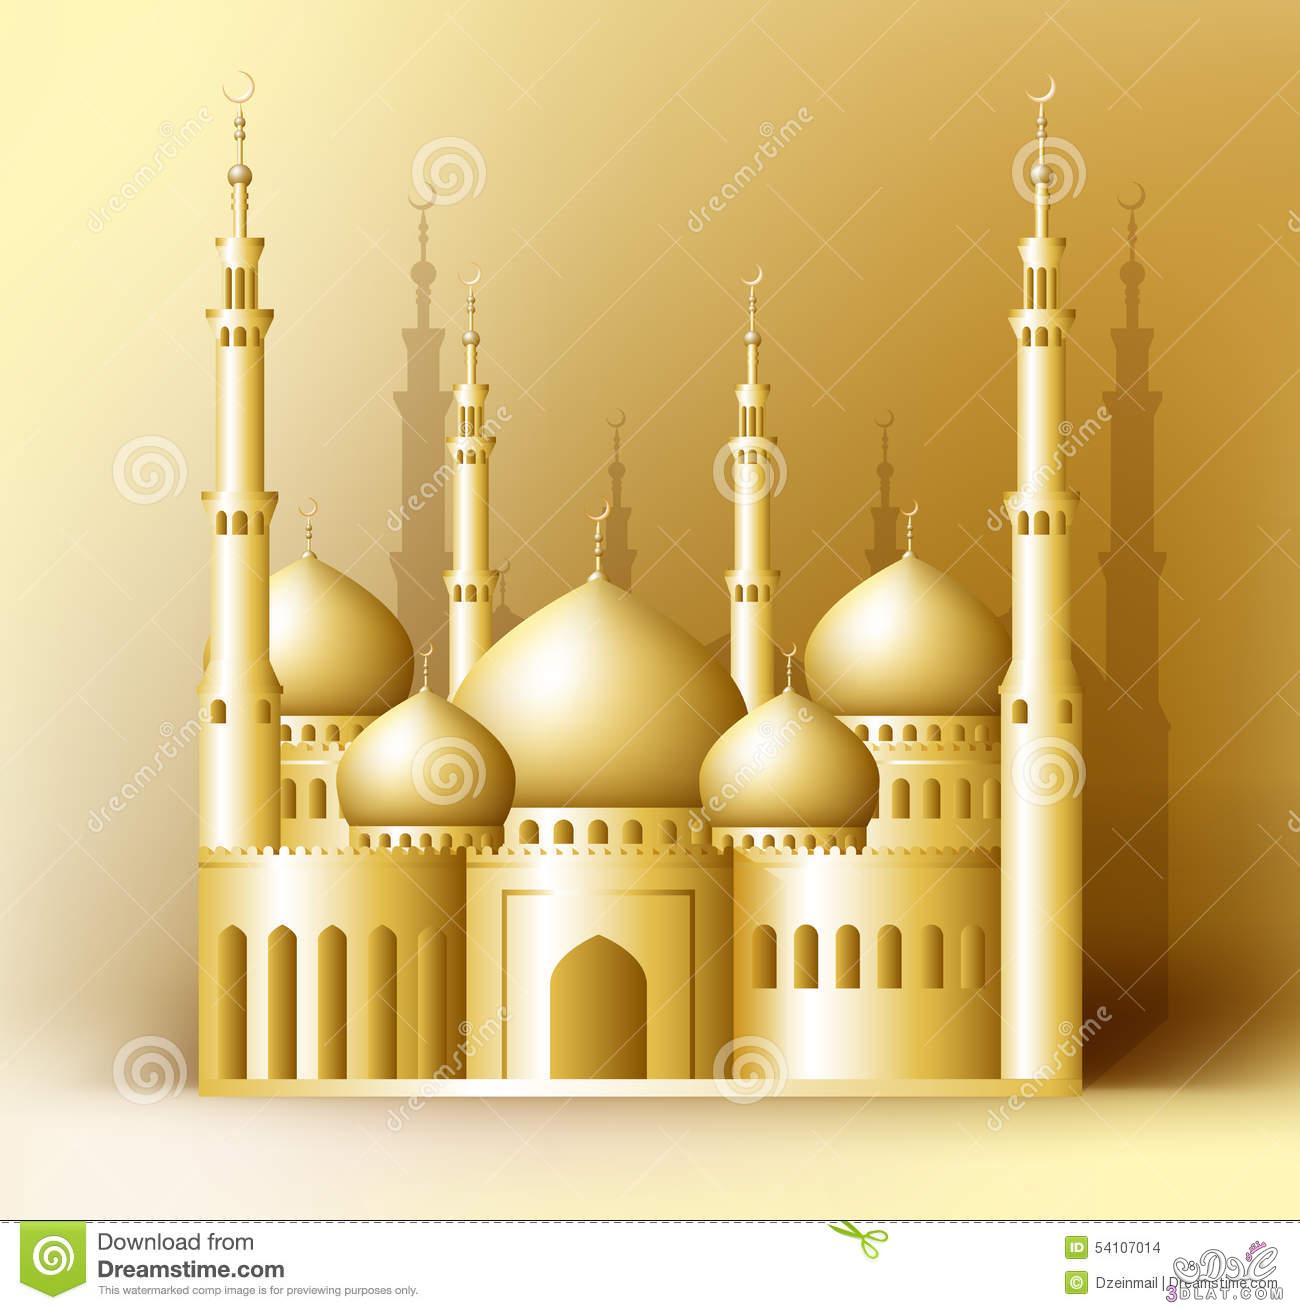 خلفيات اسلاميه , خلفيات دينيه للتصميم , أجدد مجموعه من الخلفيات الاسلاميه للتصميم